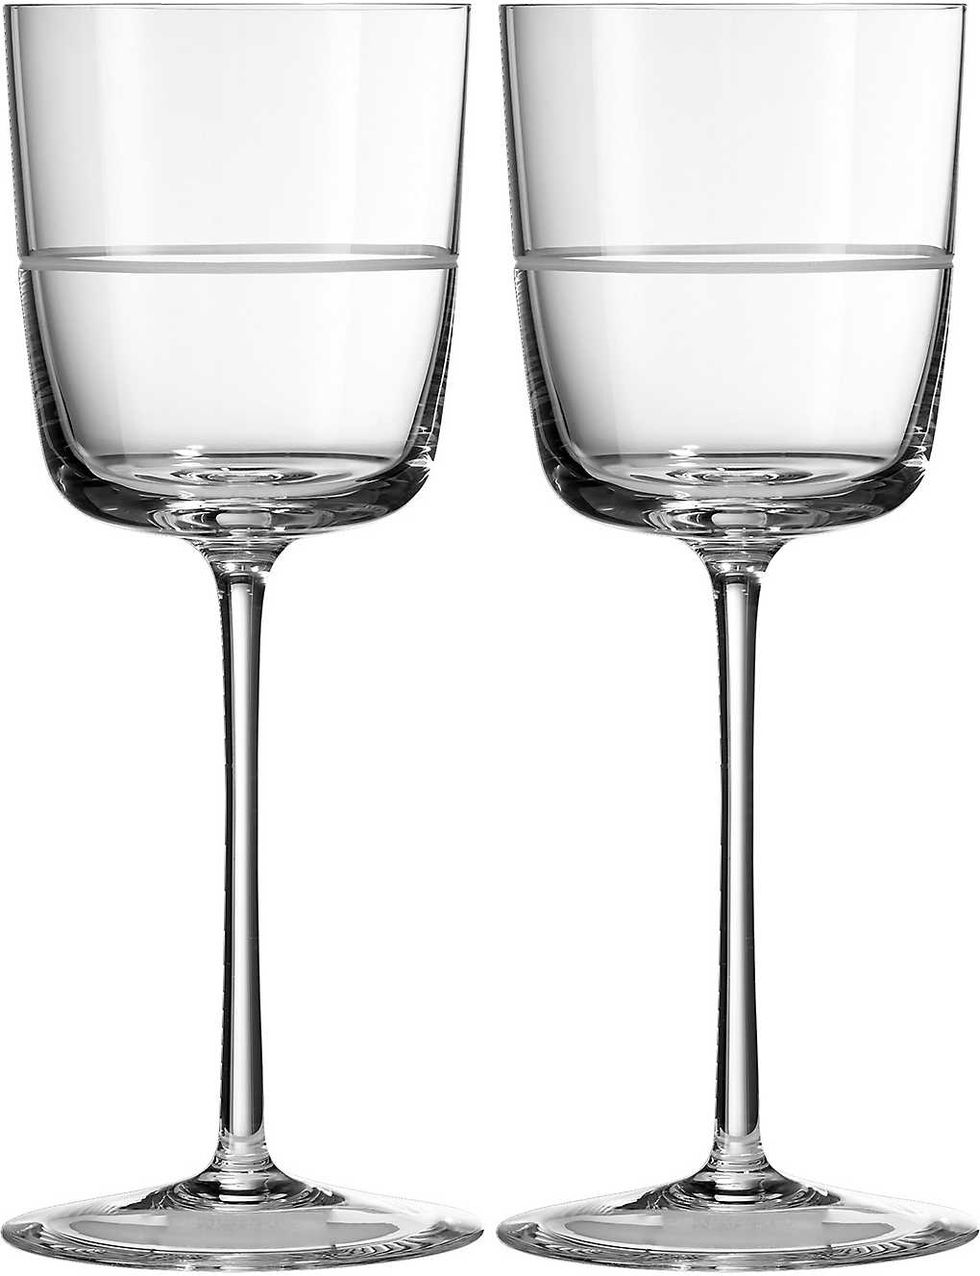 Bande crystal wine glasses pair